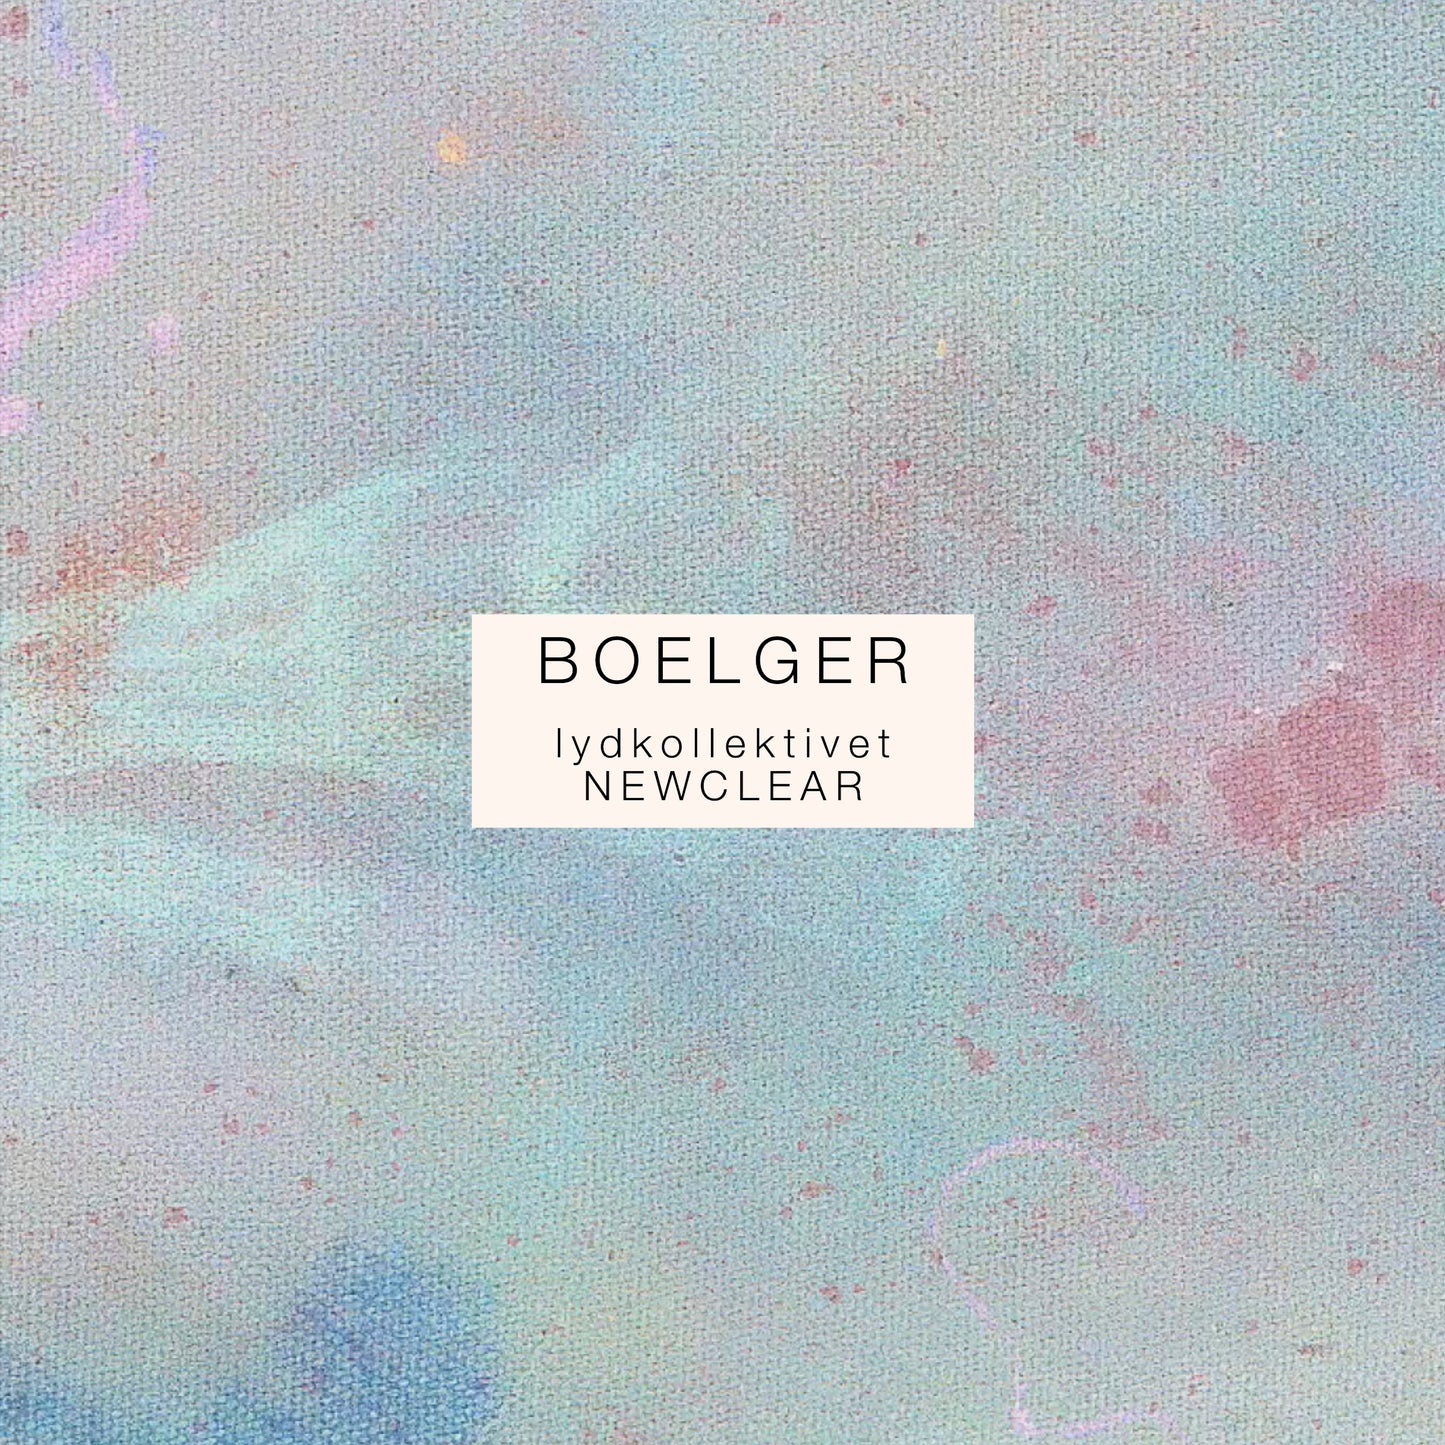 Boelger - Lydkollektivet Newclear